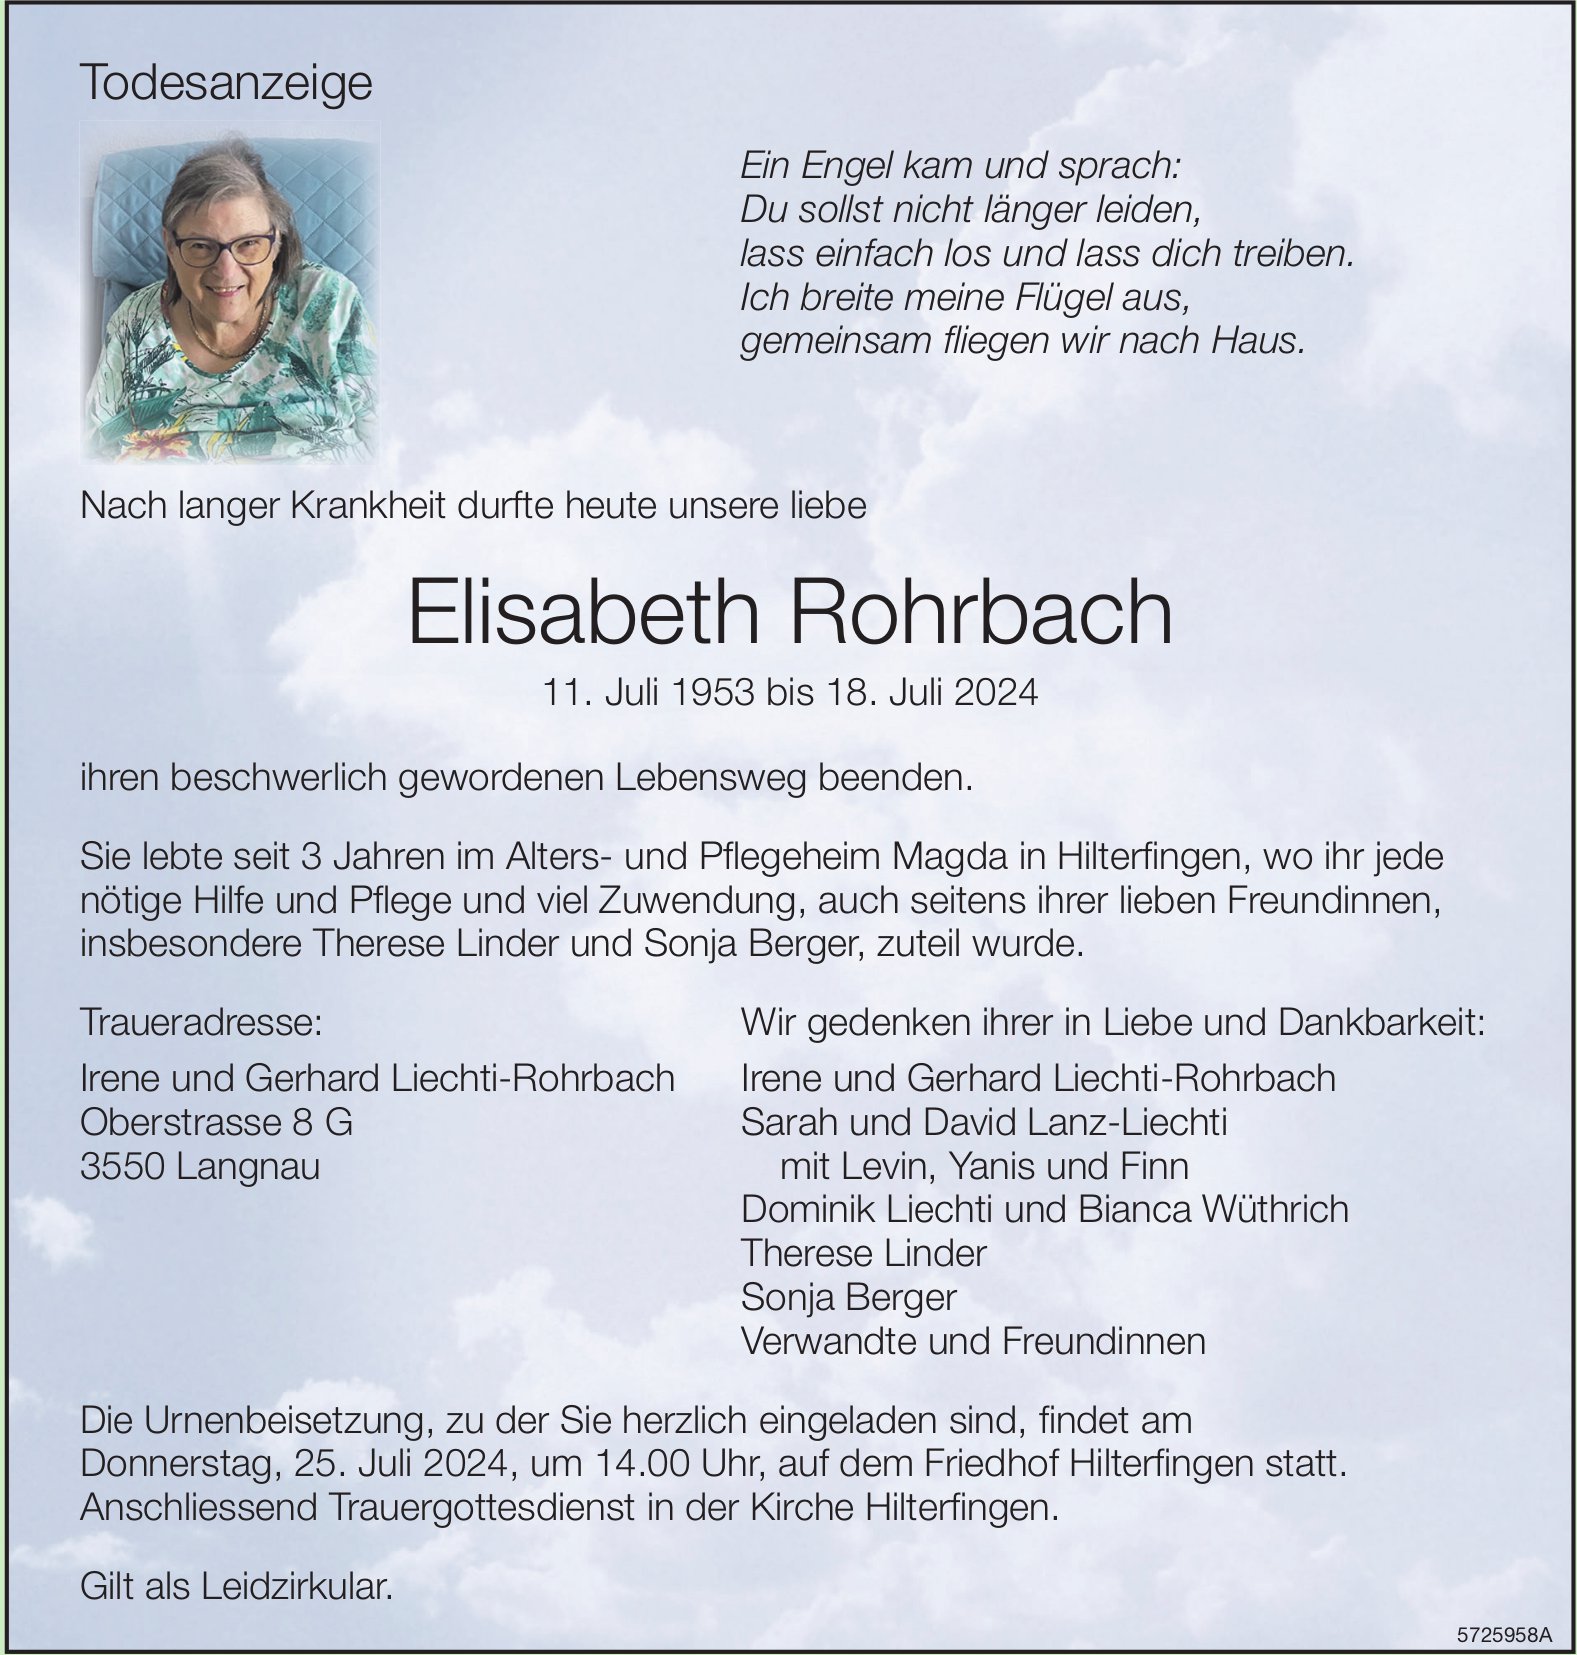 Rohrbach Elisabeth, Juli 2024 / TA